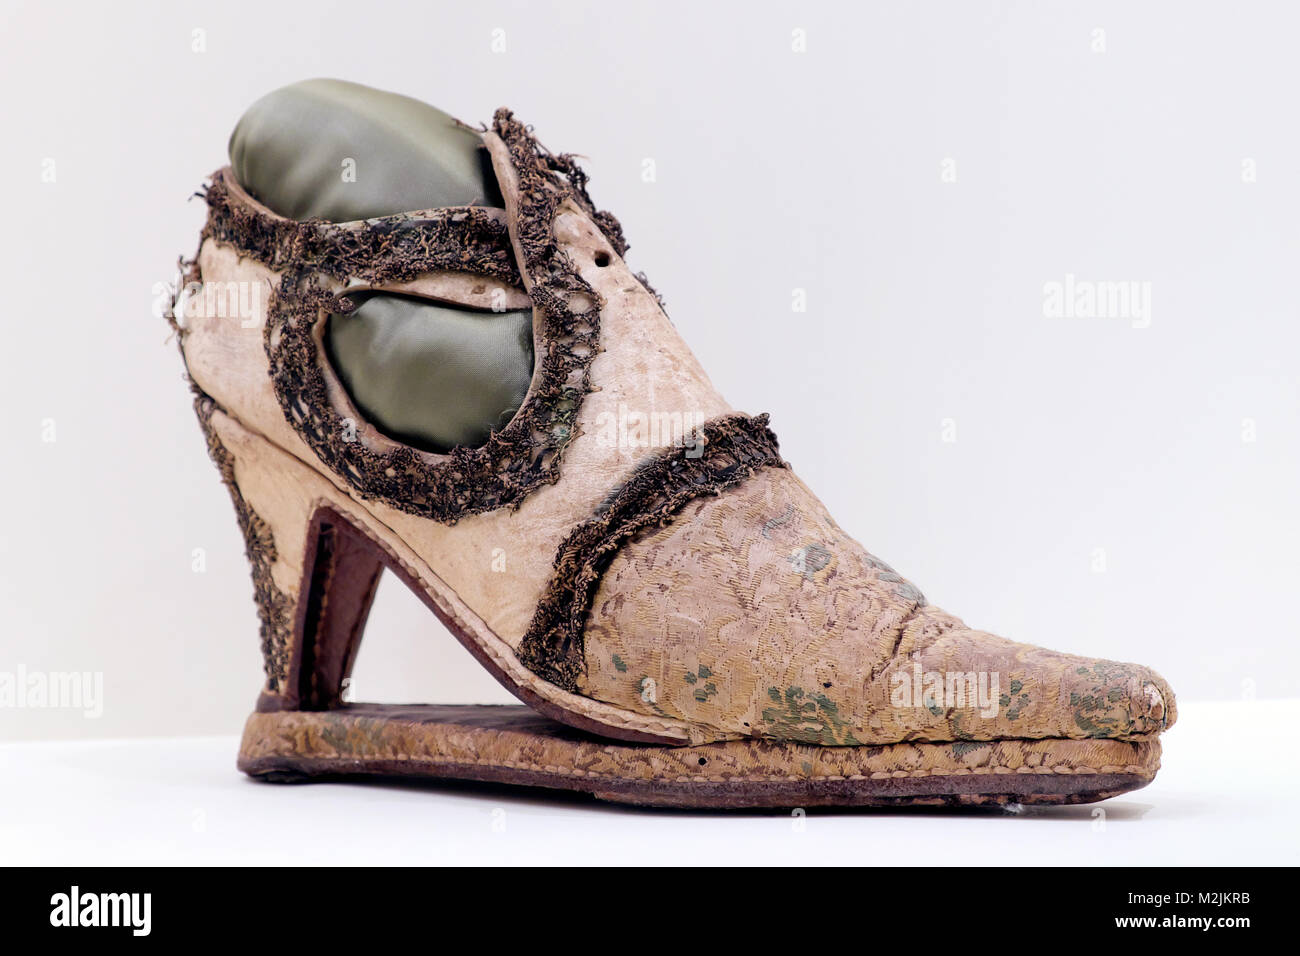 Slap-scarpe con suola, Musée International de la Chaussure / International Shoe Museum, Romans-sur-Isère, Drôme, Francia Foto Stock